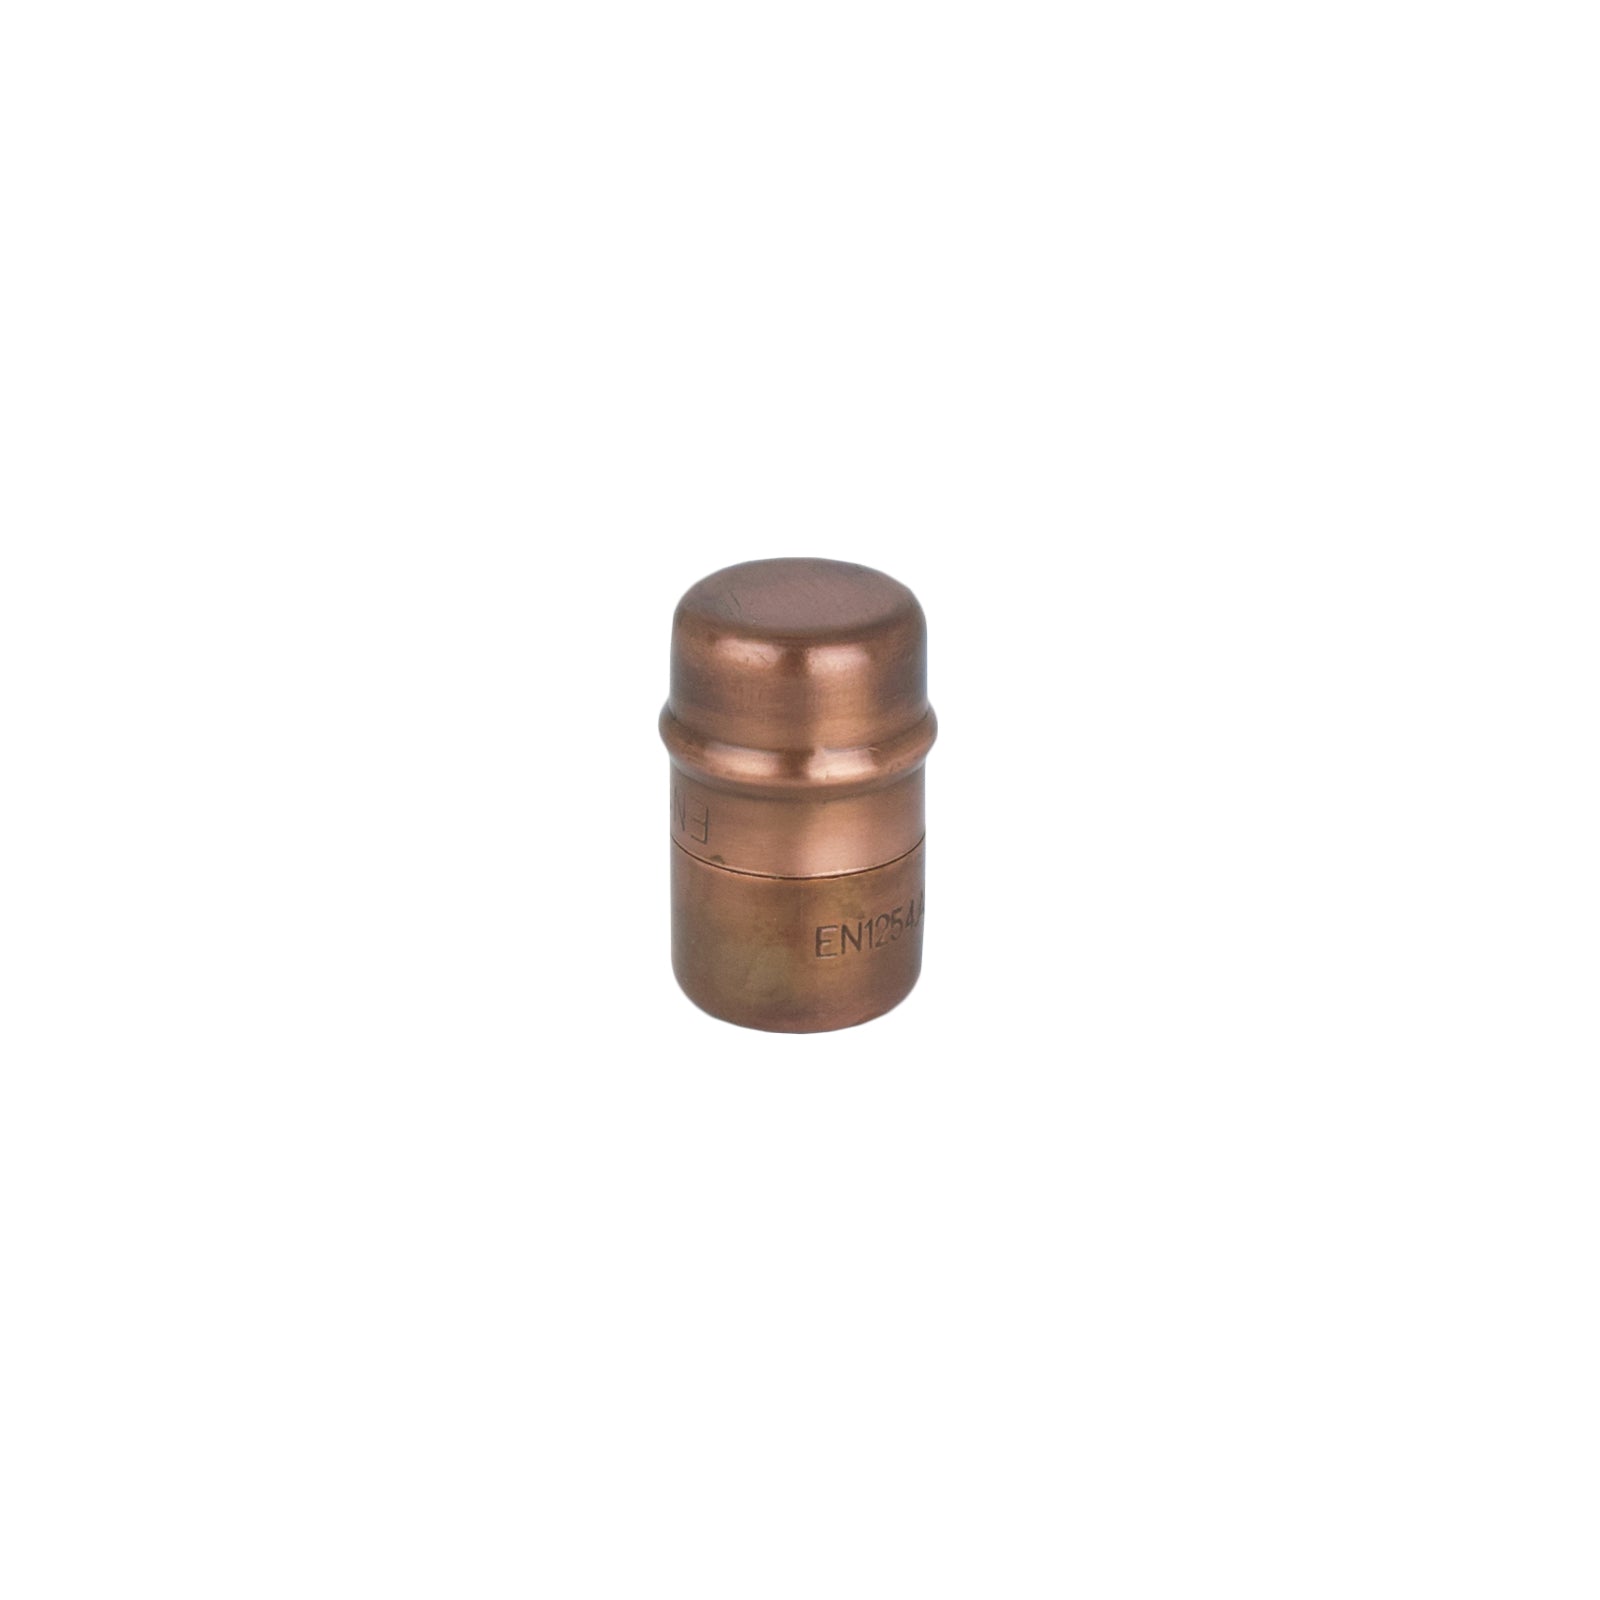 Copper Knob Aged - Kitchen Cabinet knob - Proper Copper Design